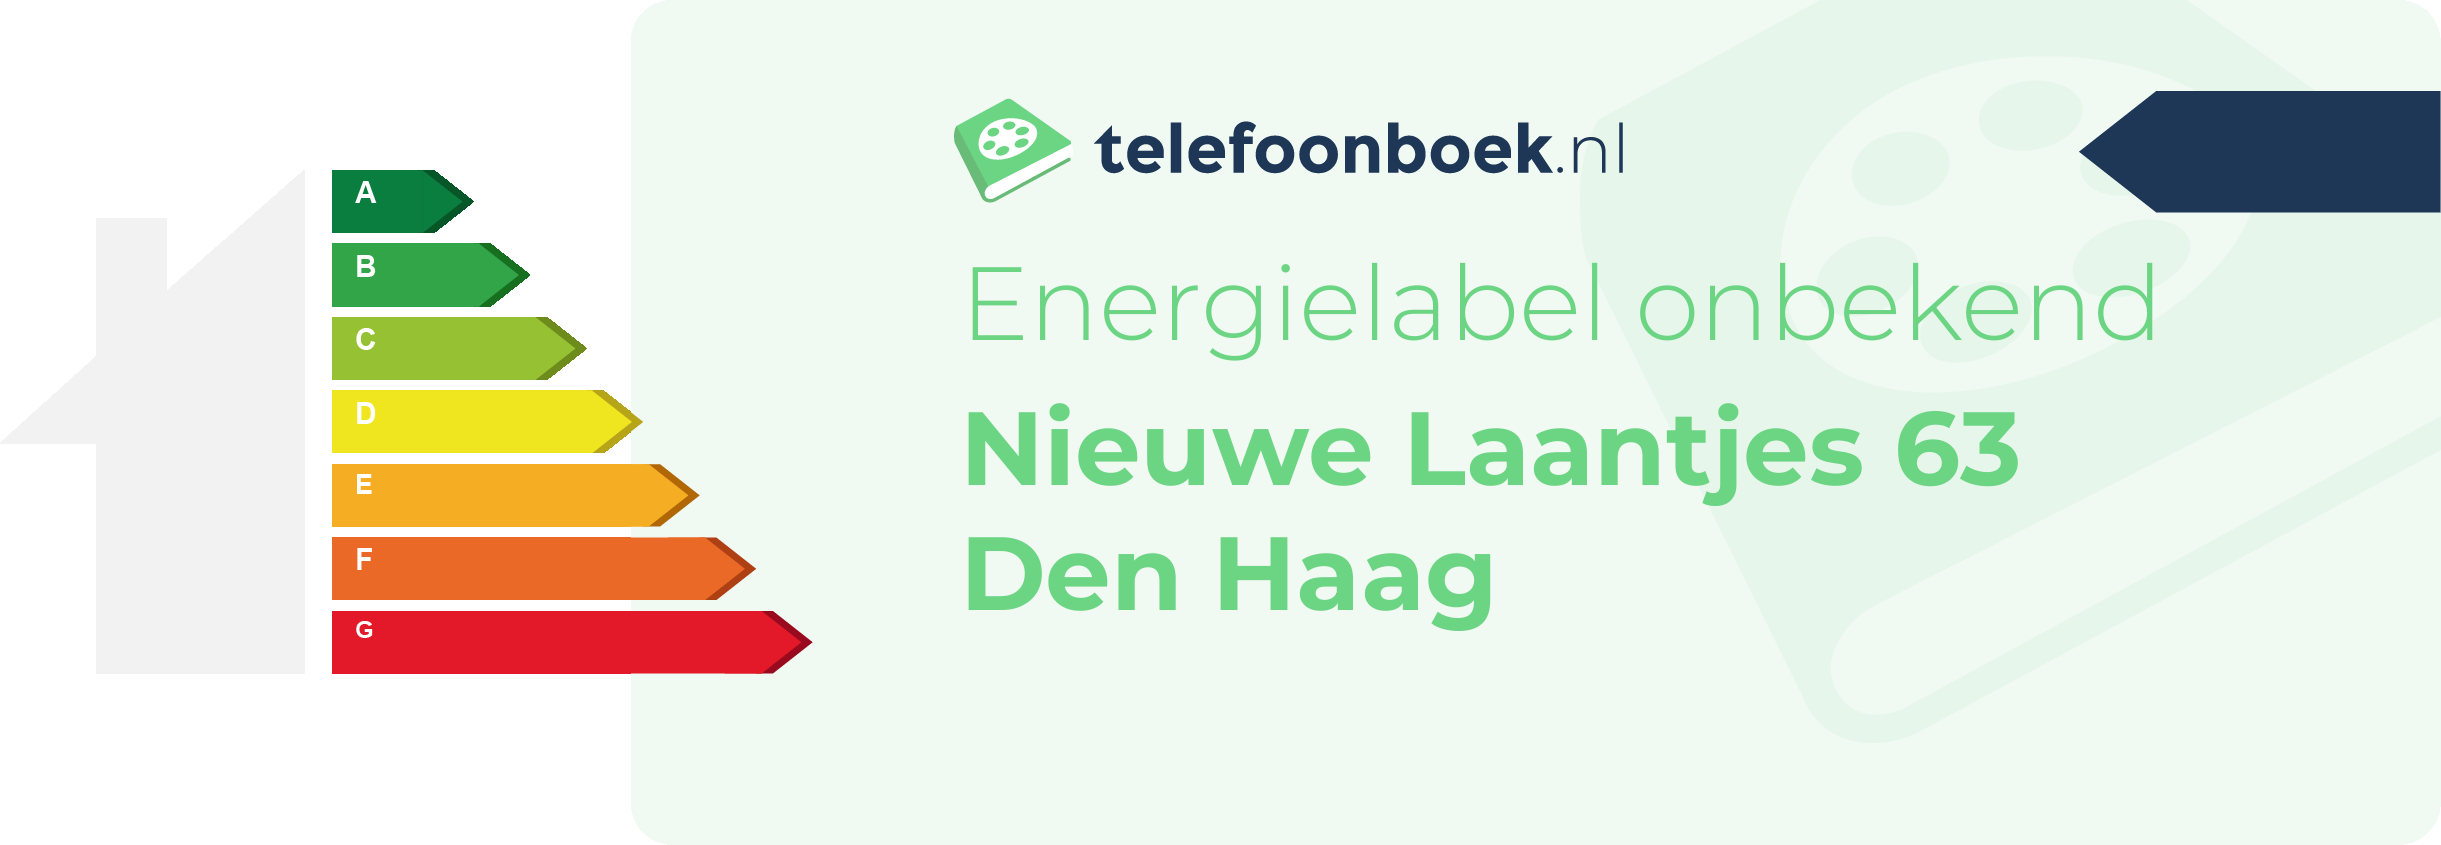 Energielabel Nieuwe Laantjes 63 Den Haag